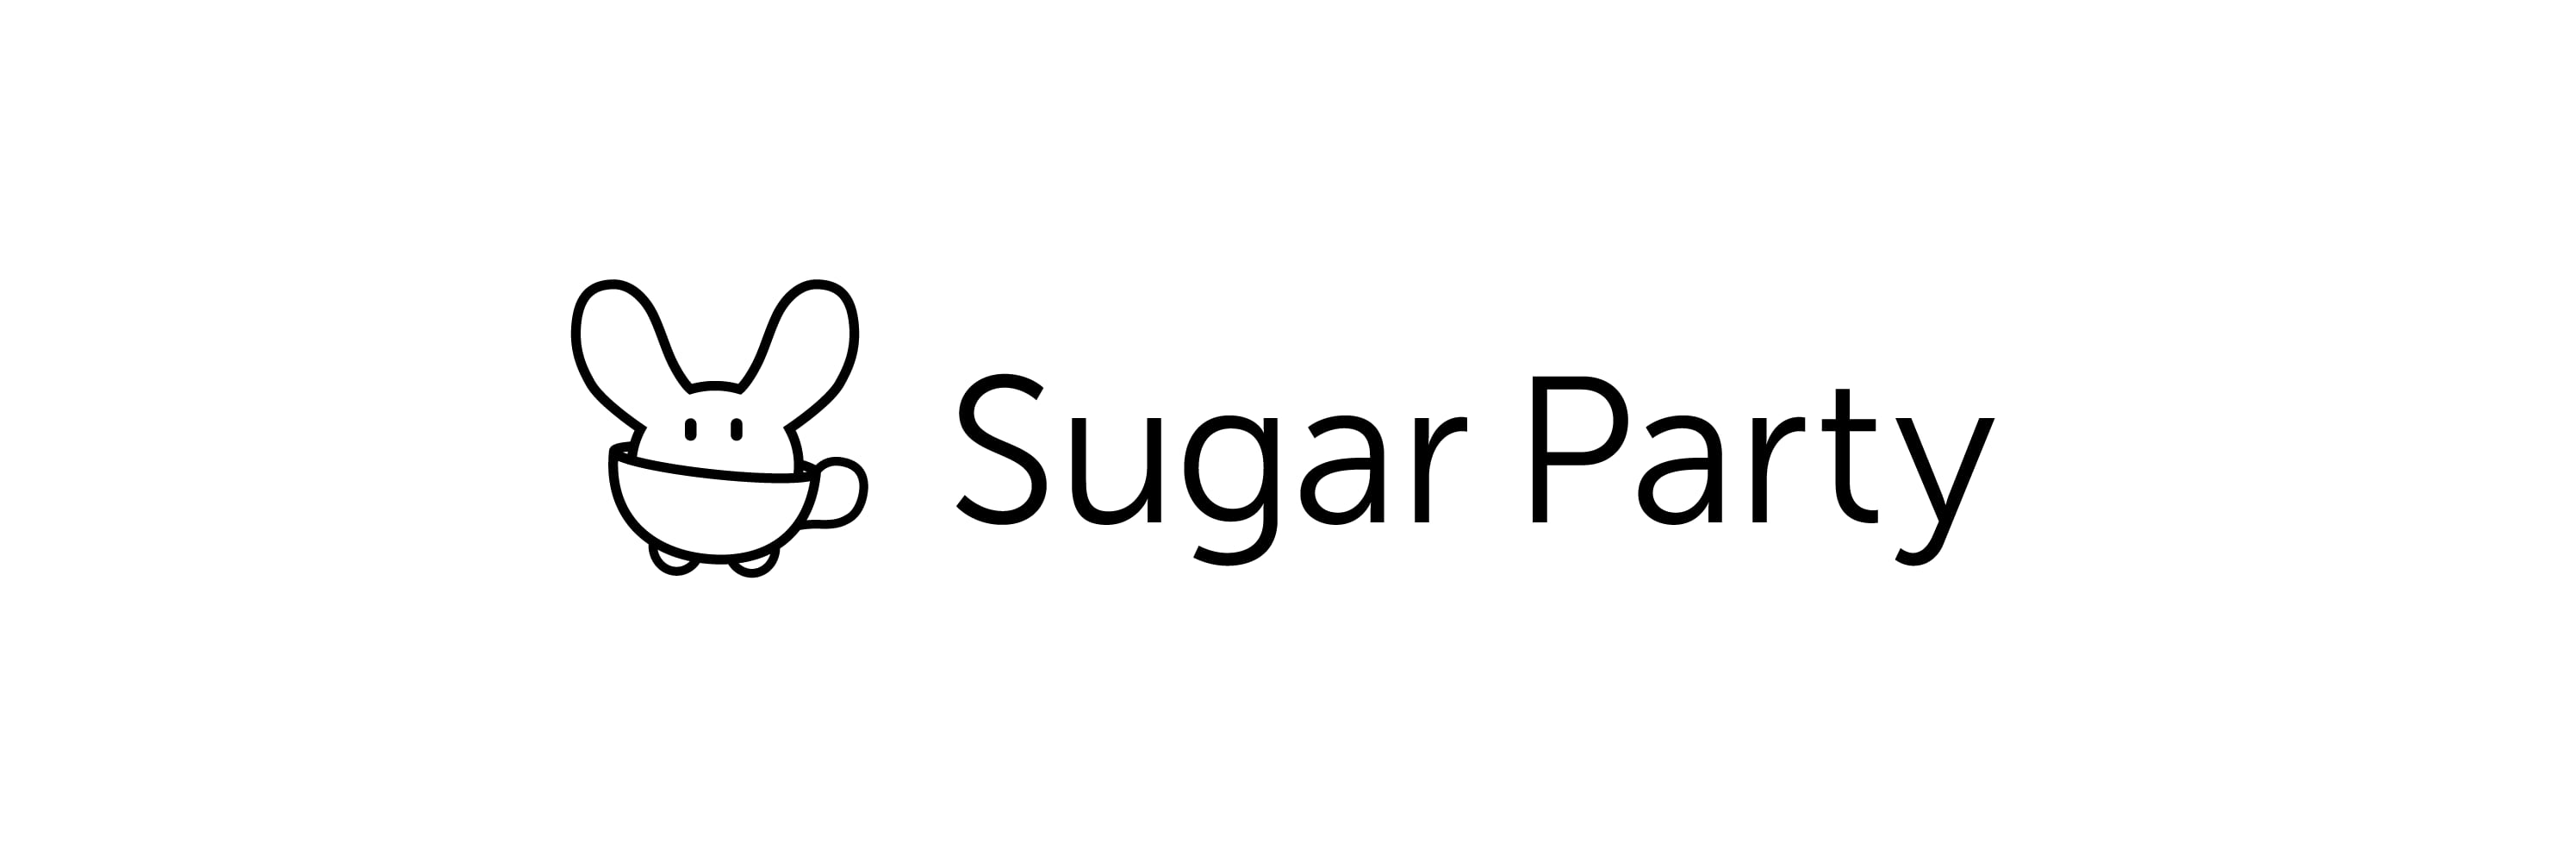 Sugar Party Online